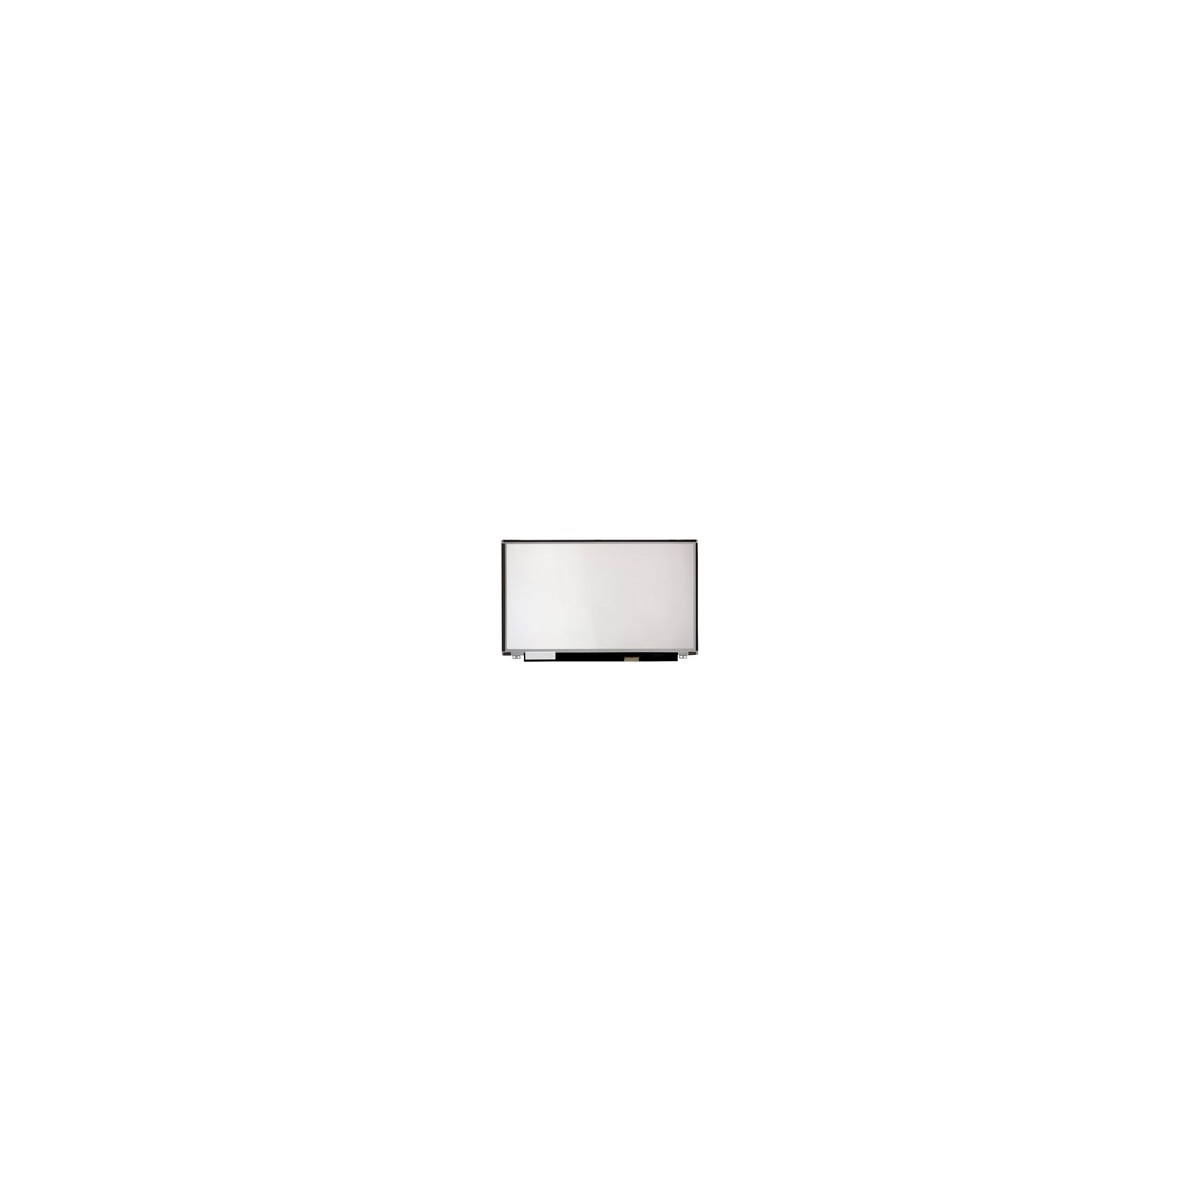 CoreParts MSC156F40-095M - Display - 39.6 cm (15.6) - Full HD